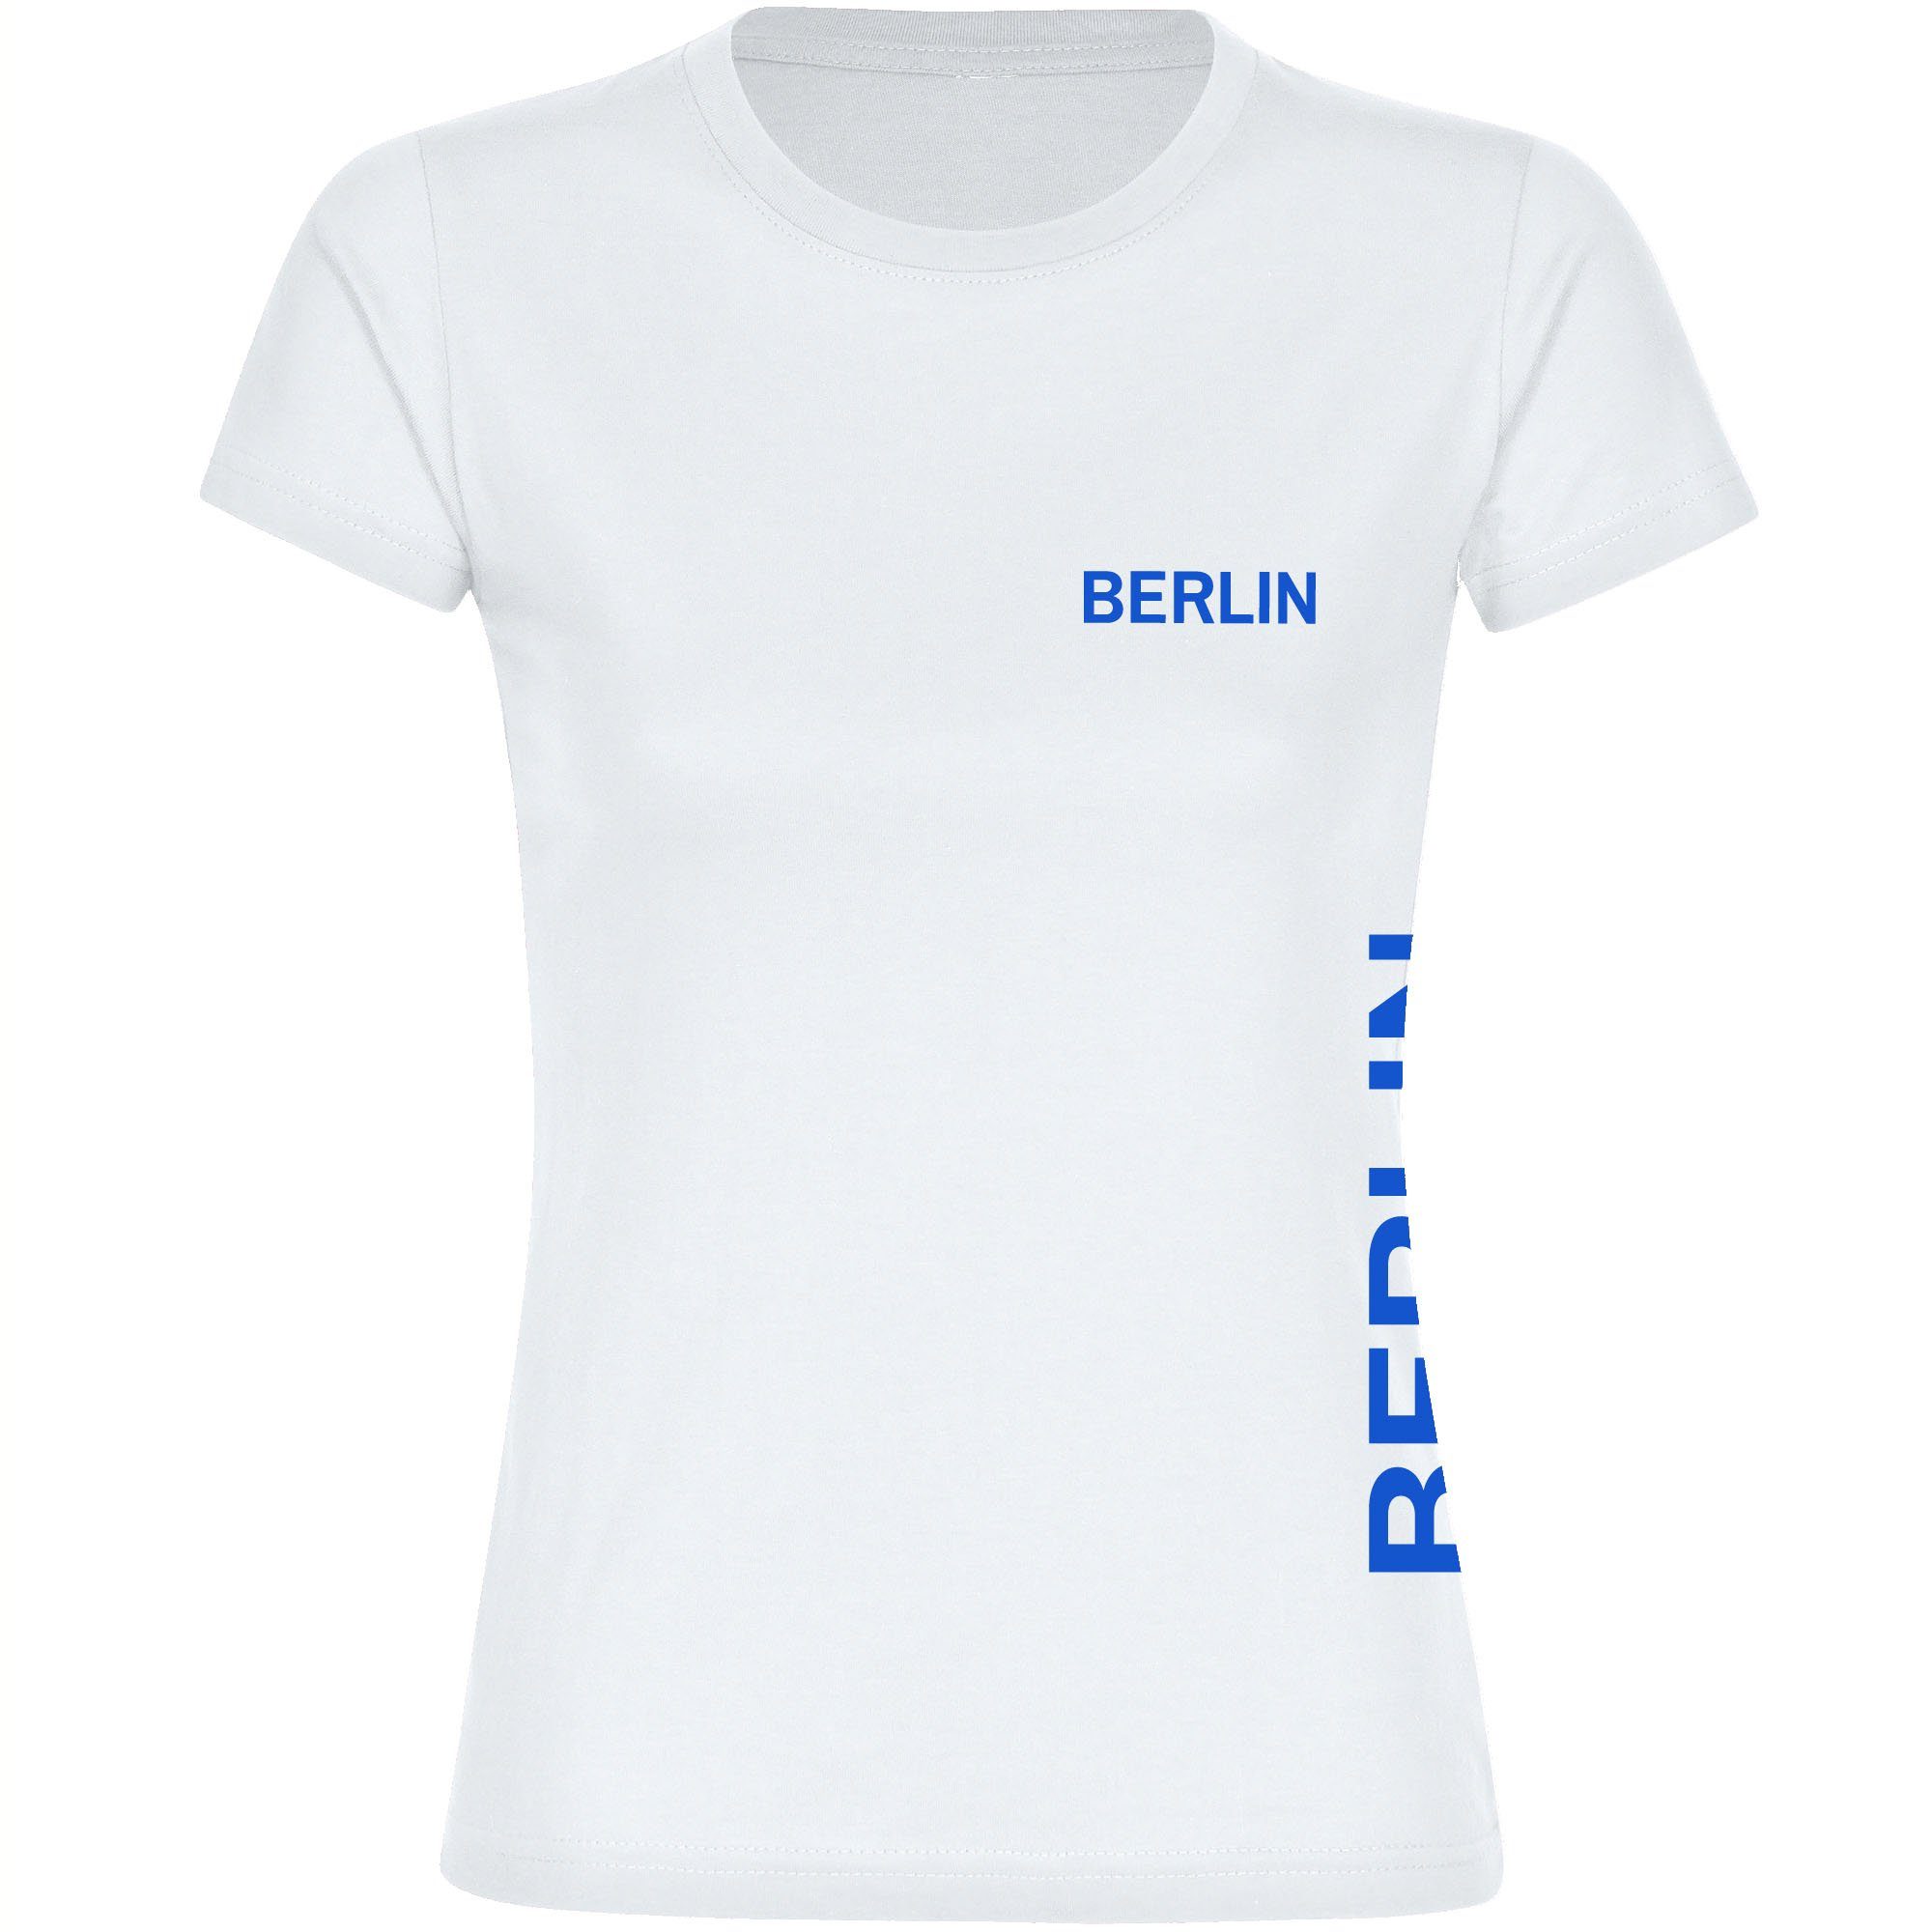 multifanshop T-Shirt Damen Berlin blau - Brust & Seite - Frauen